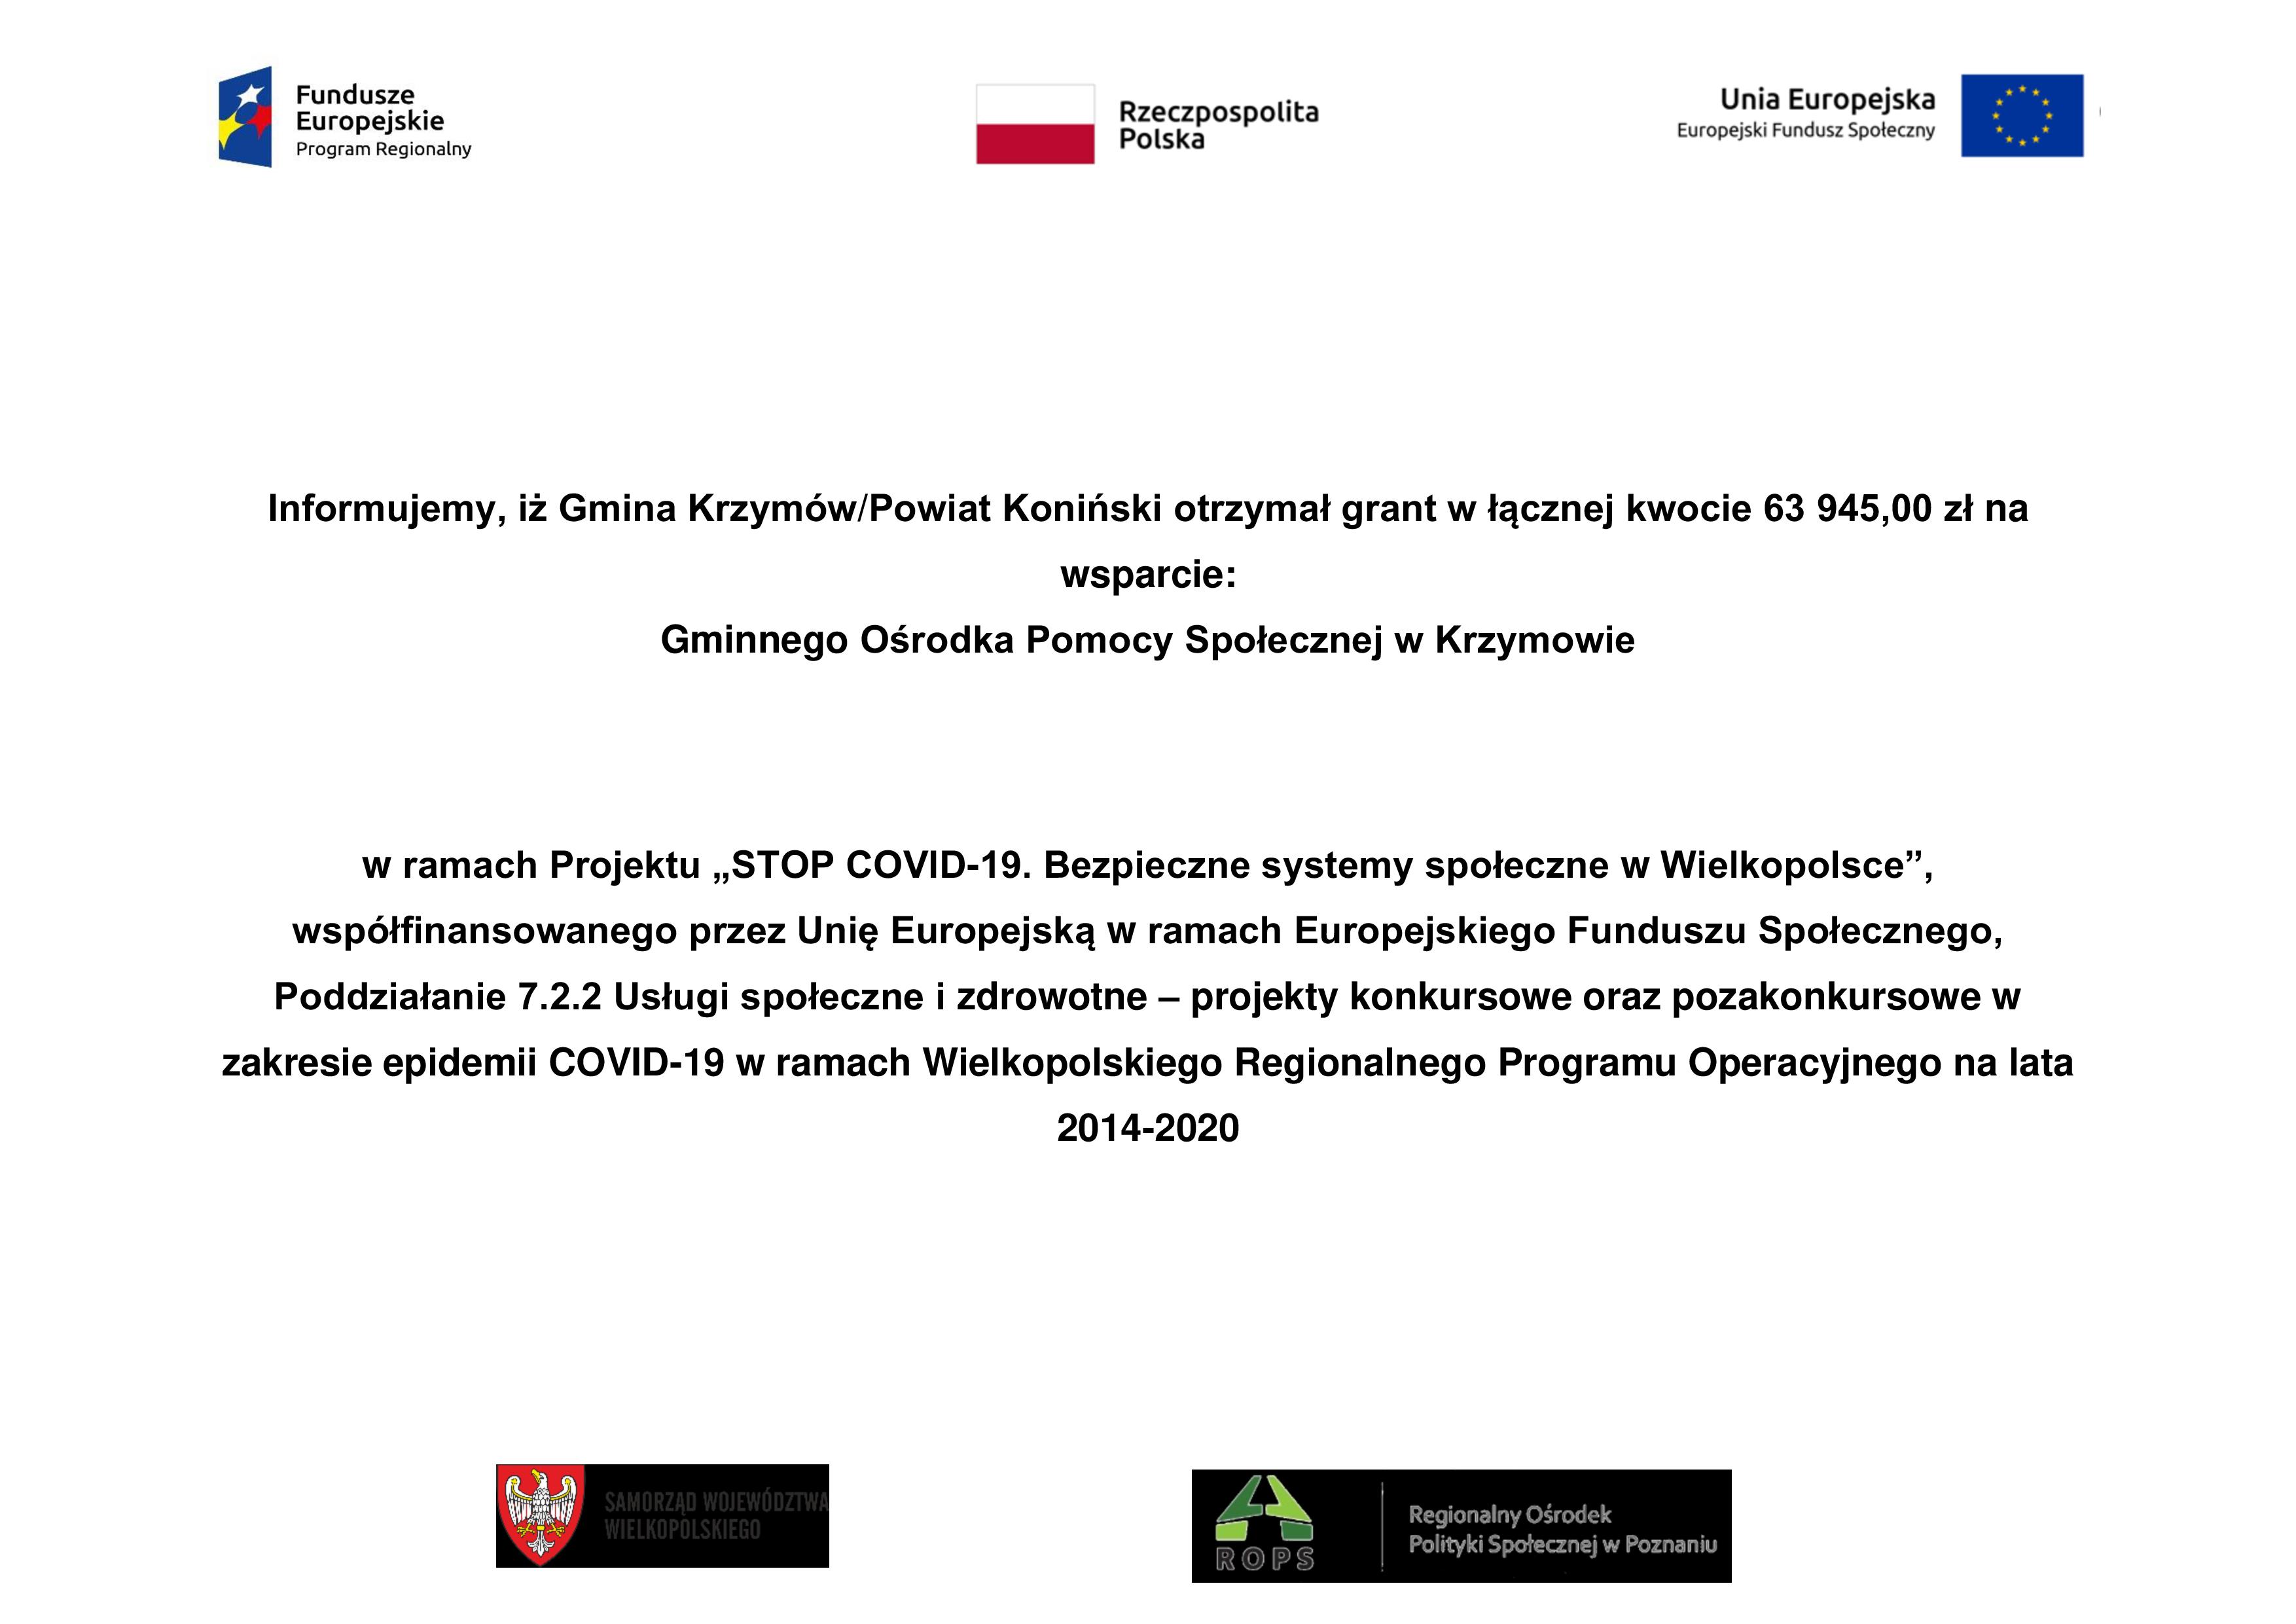 Informujemy, że Gmina Krzymów/Powiat Koniński otrzymał grant w łącznej kwocie 63.945.00 zł na wsparcie : Gminneho Ośrodka Pomocy Społecznej w Krzymowie